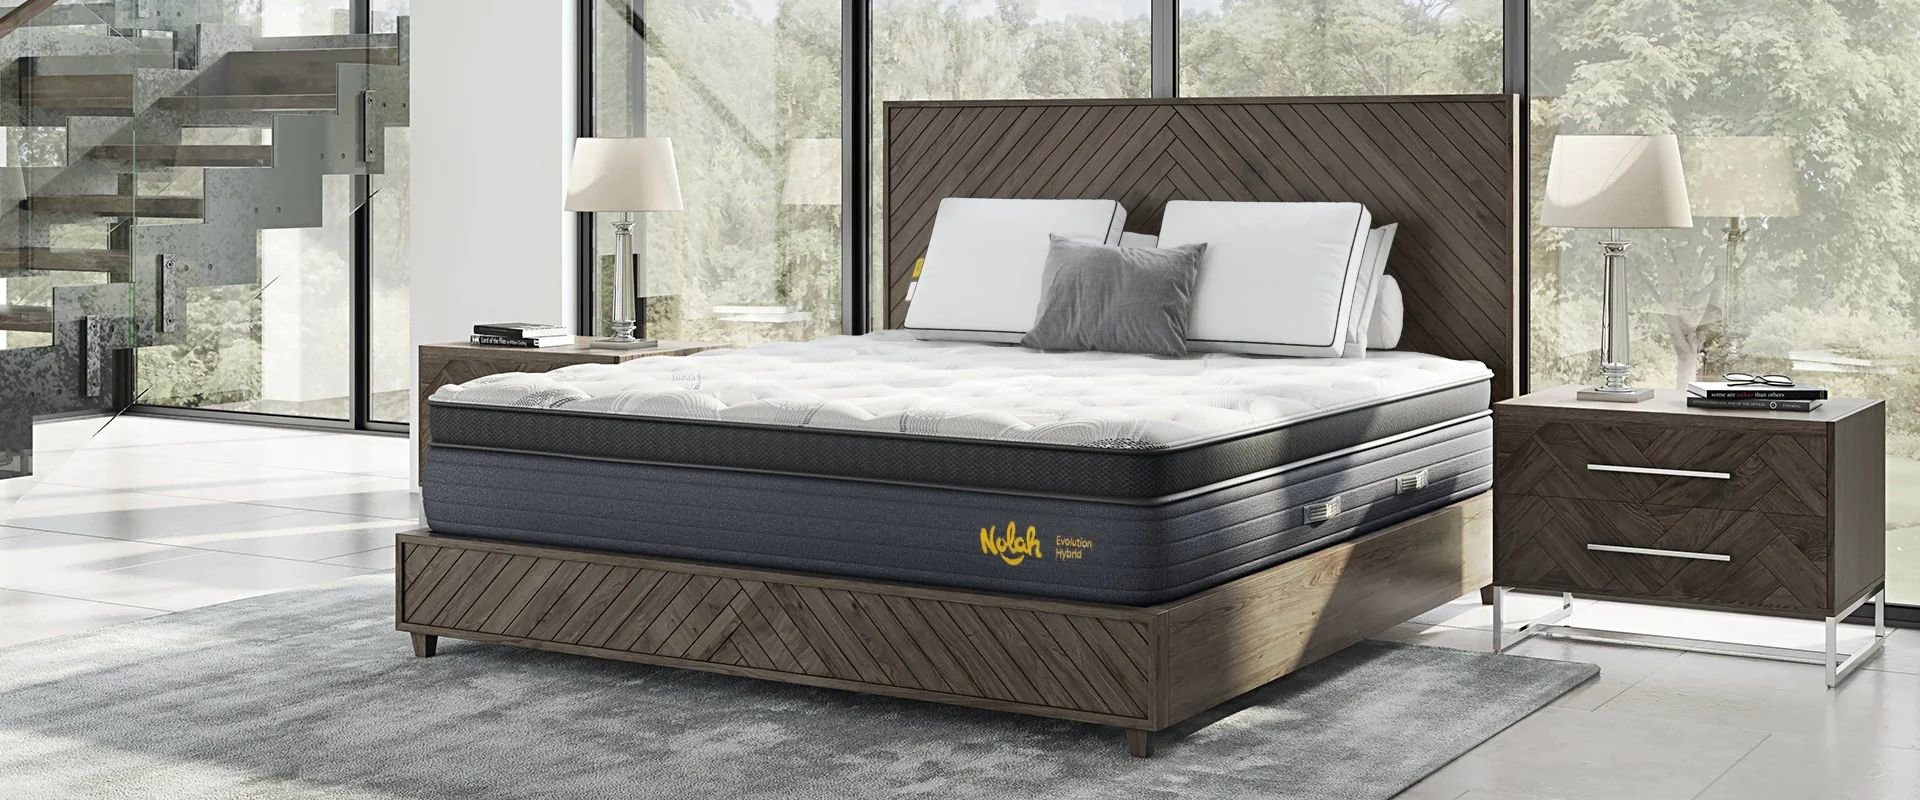 6.5 mattress firmness